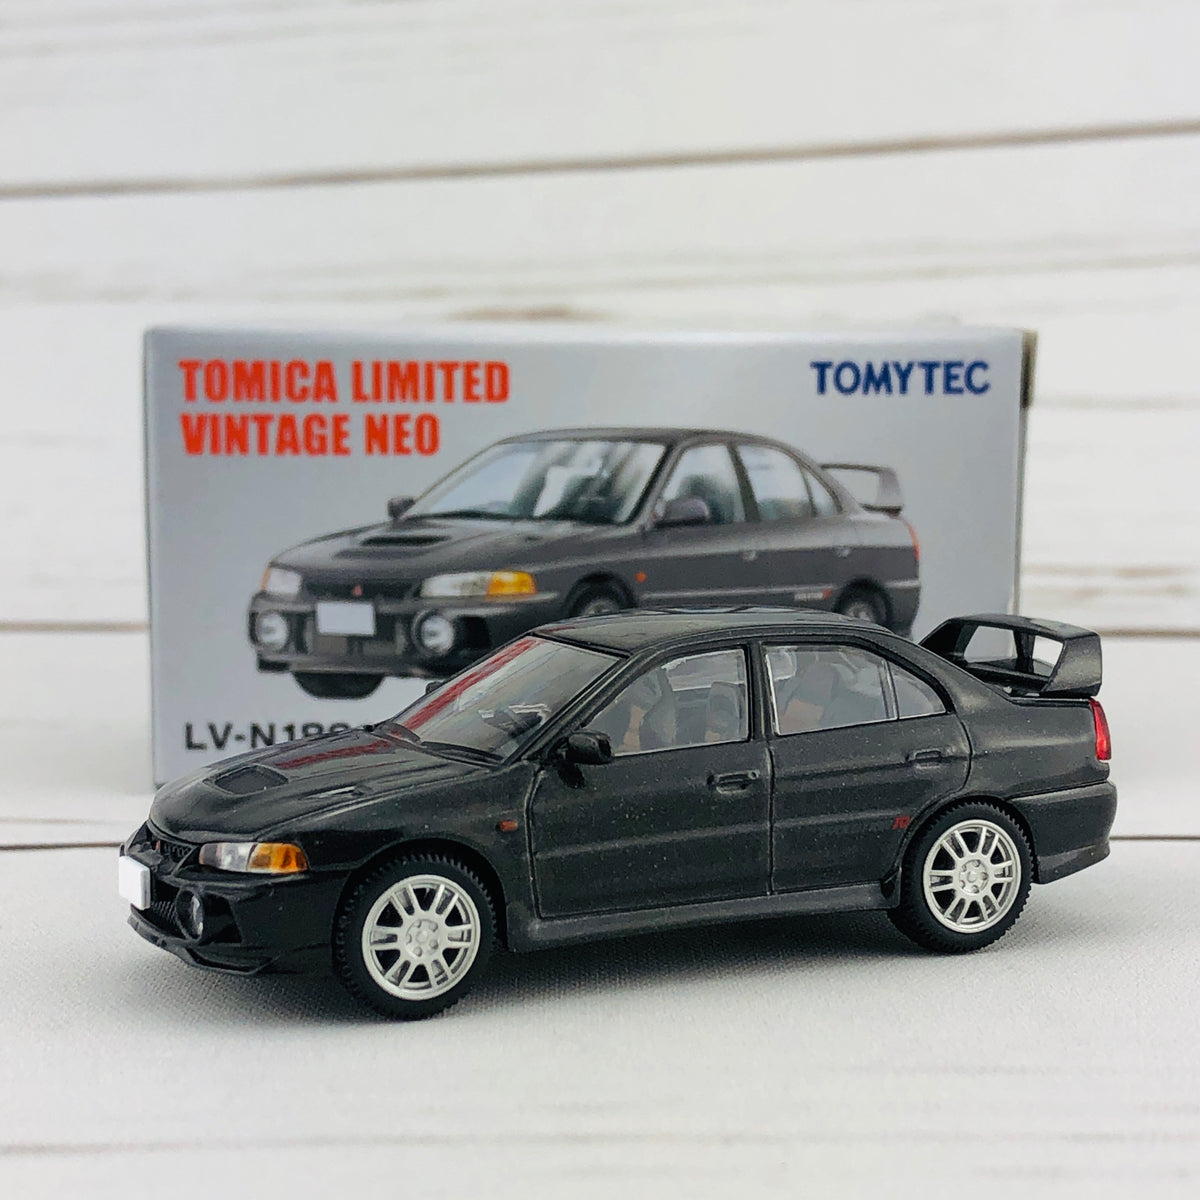 Tomica Limited Vintage Neo Mitsubishi Lancer Evolution IV GSR 